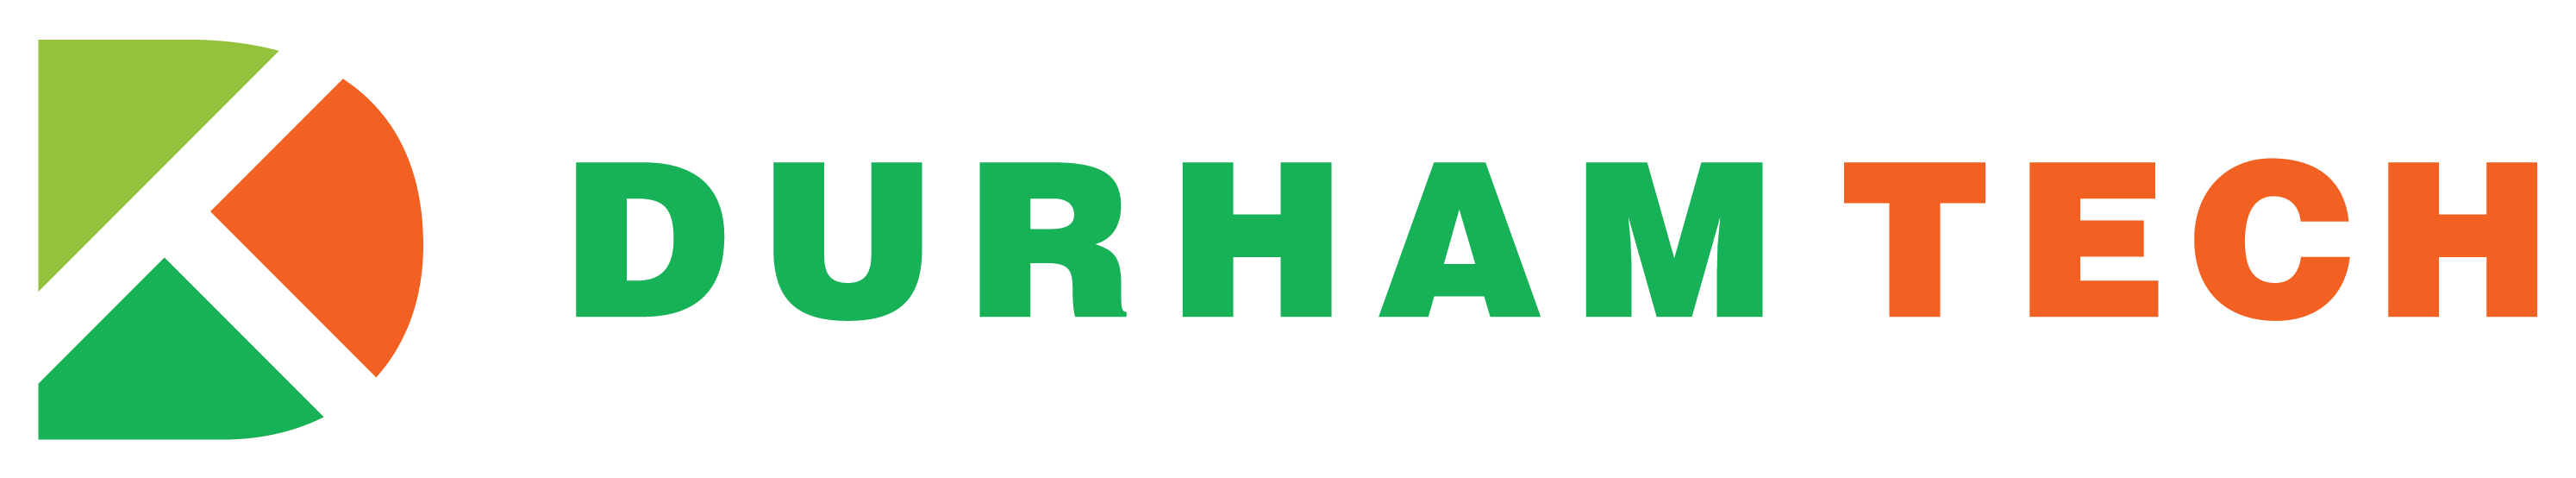 Durham Tech Logo